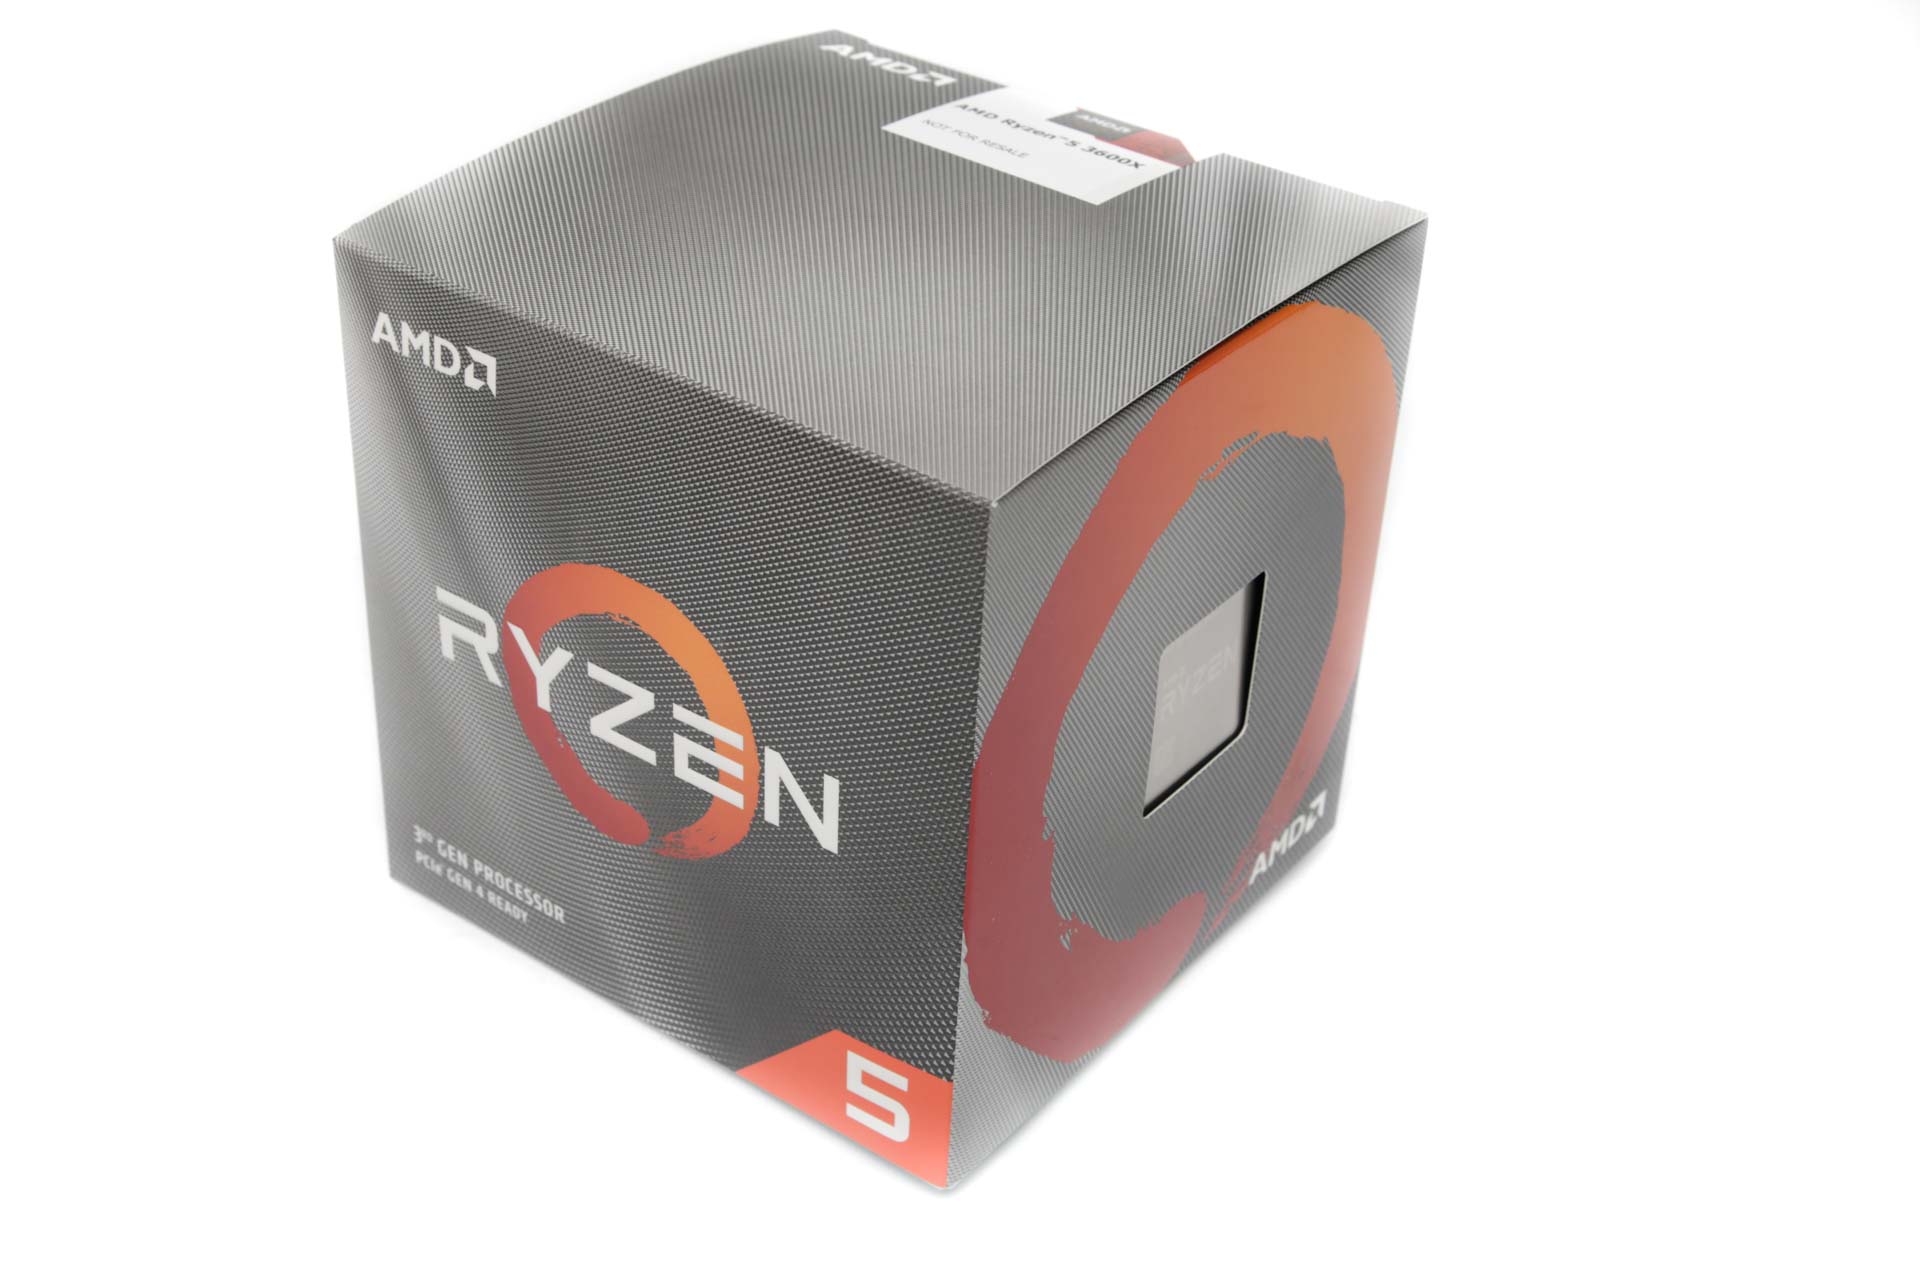 This! 36+ Hidden Facts of Amd Ryzen 5 3600X Stock Cooler Review! Buy